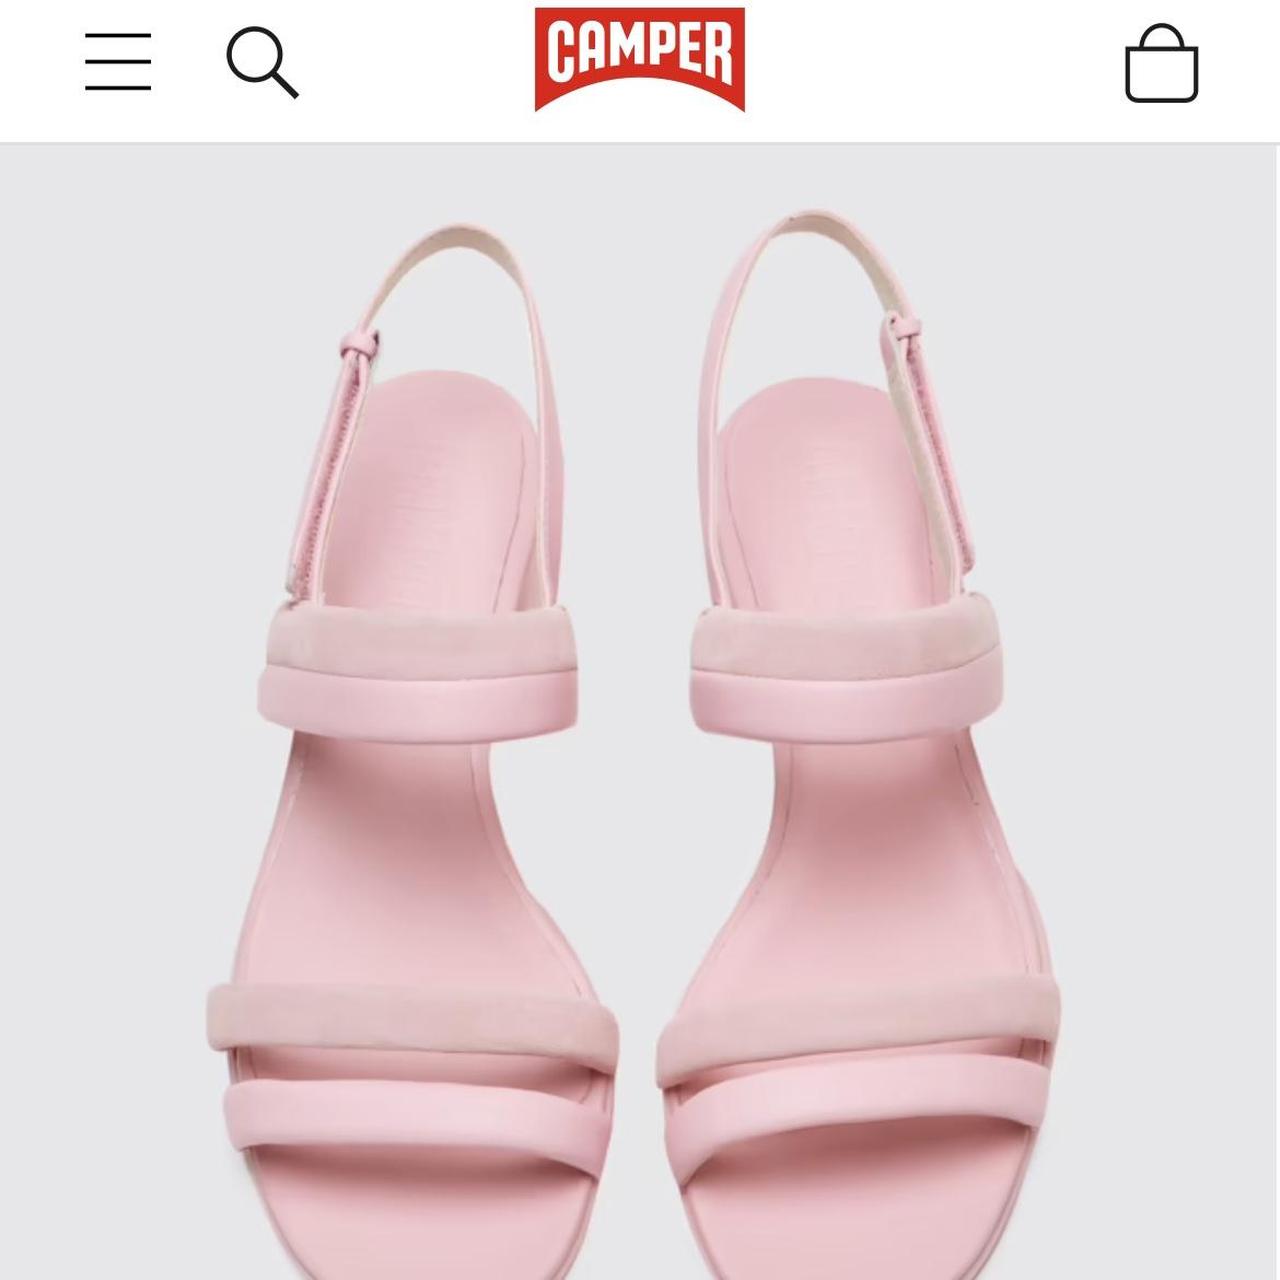 Product Image 2 - CAMPER Katie light pink sandal